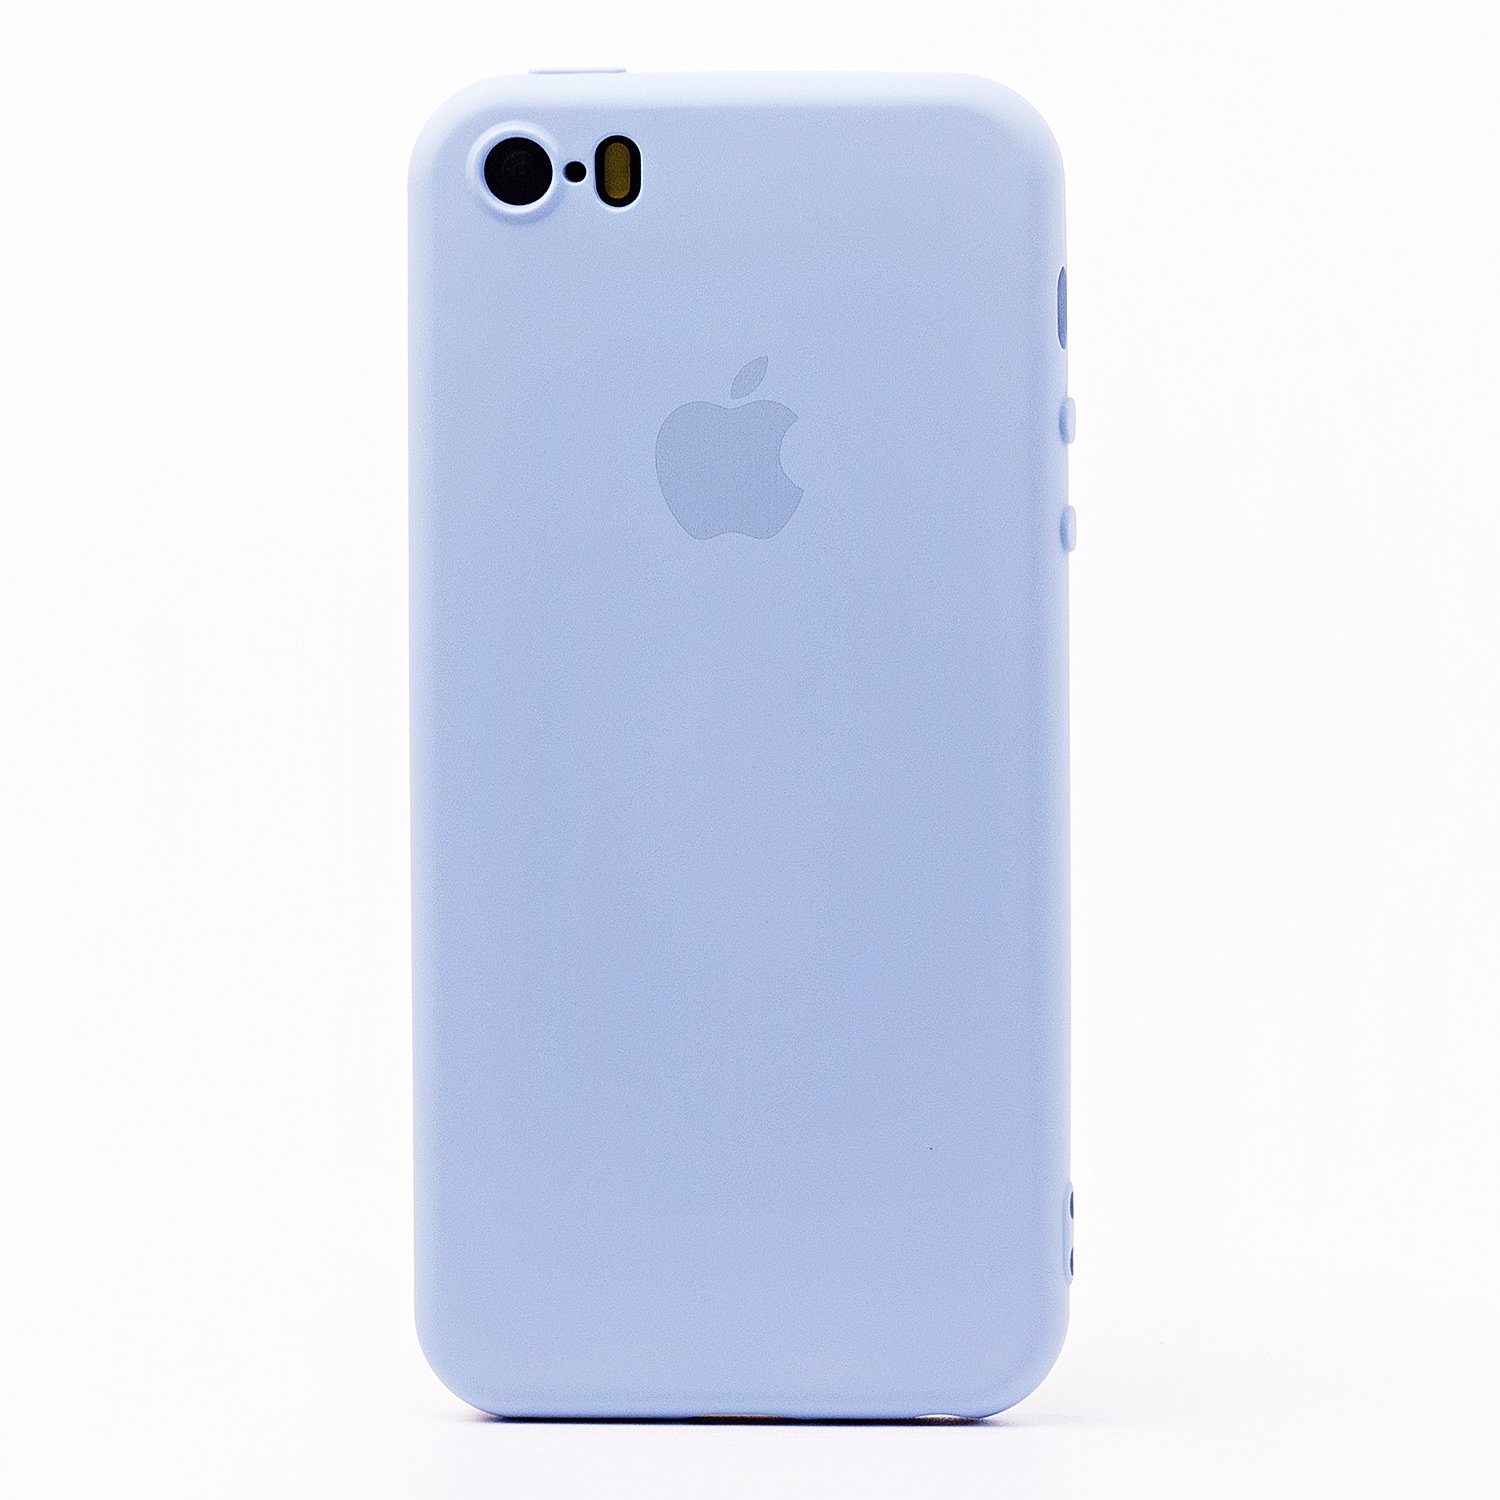 Чехол-накладка ORG Full Soft Touch для смартфона Apple iPhone 5/5s/SE, силикон, светло-синий (115011)